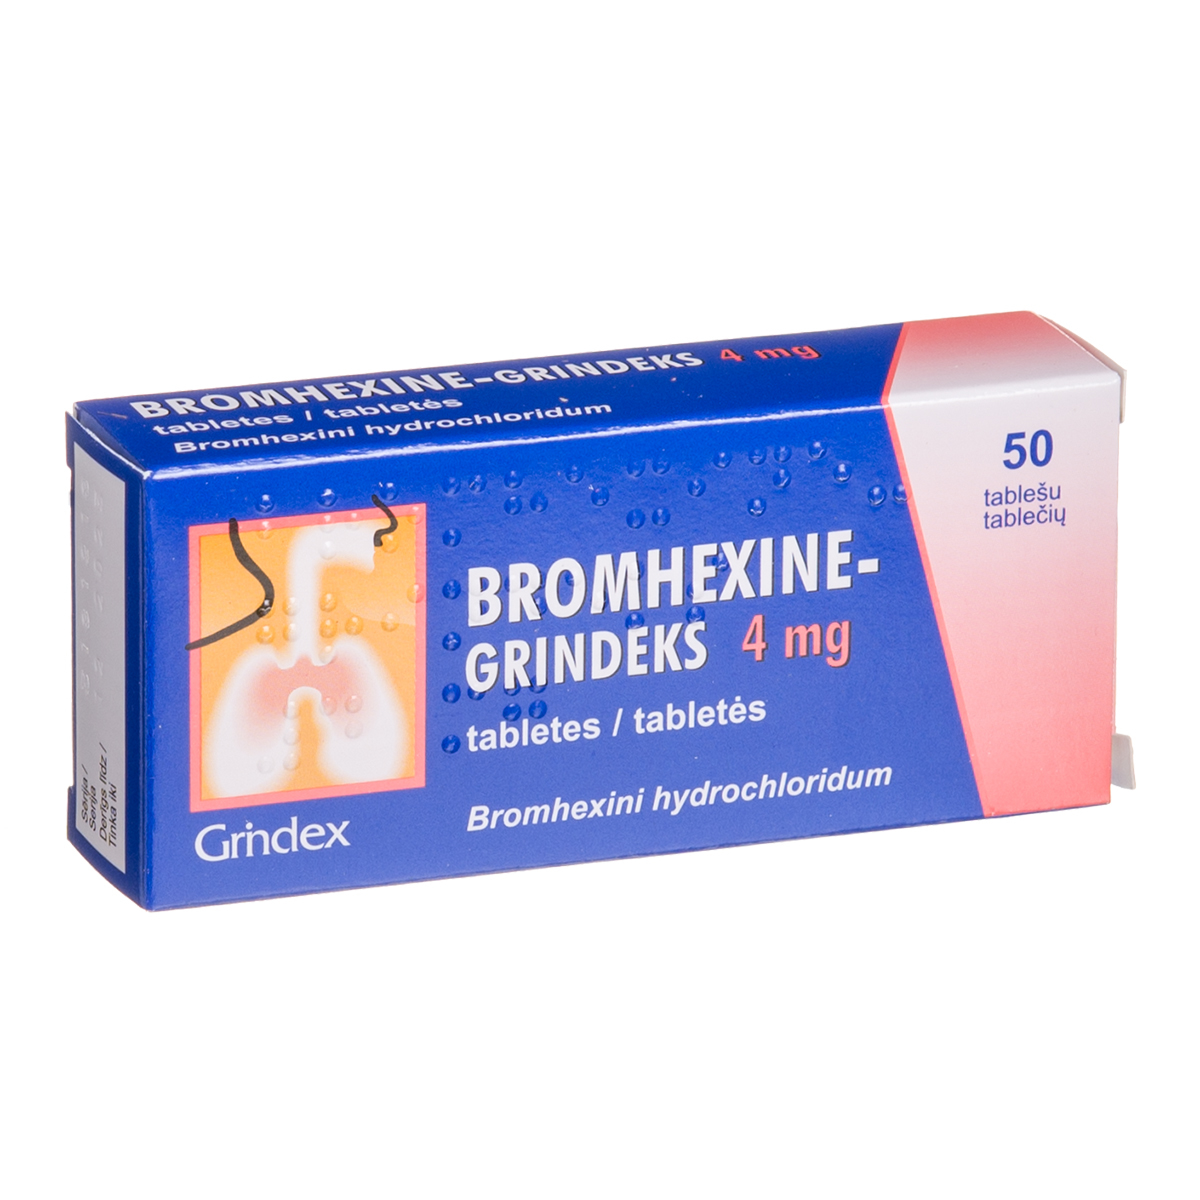 BROMHEXINE-GRINDEKS, 4 mg, tabletės, N50